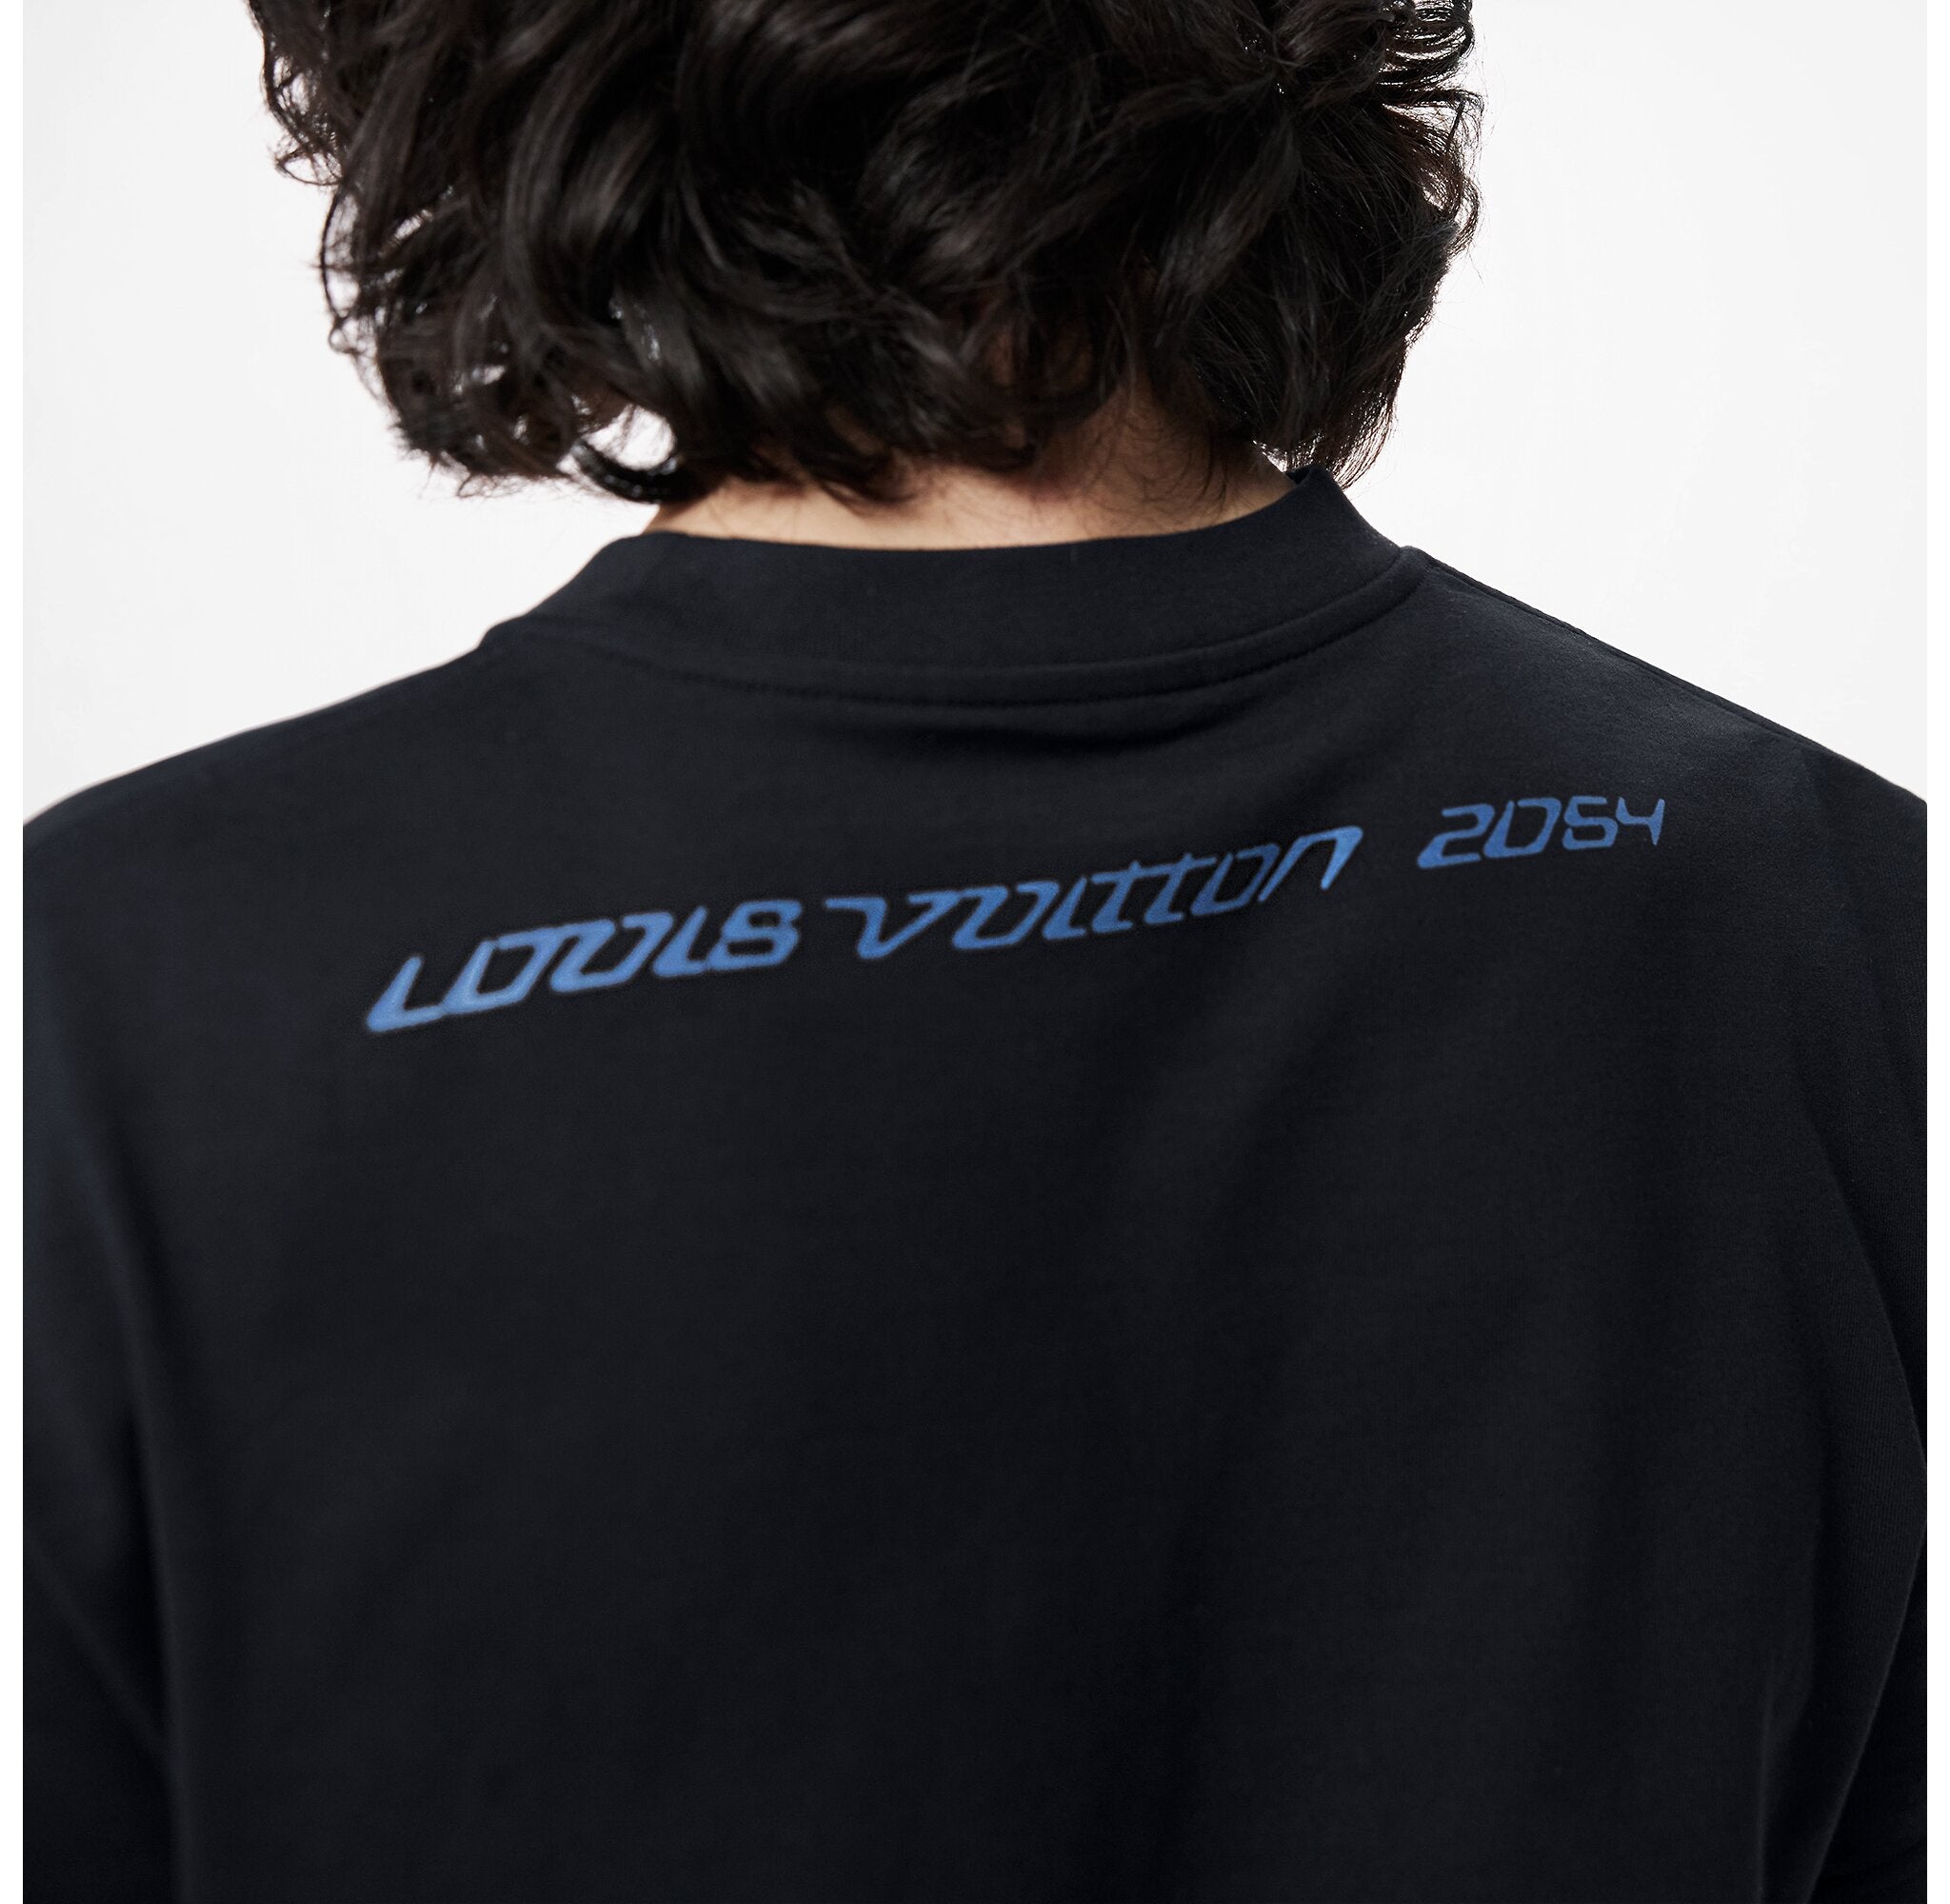 LOUIS VUITTON 2054 SIGNATURE BLACK T-SHIRT – e-Outlet